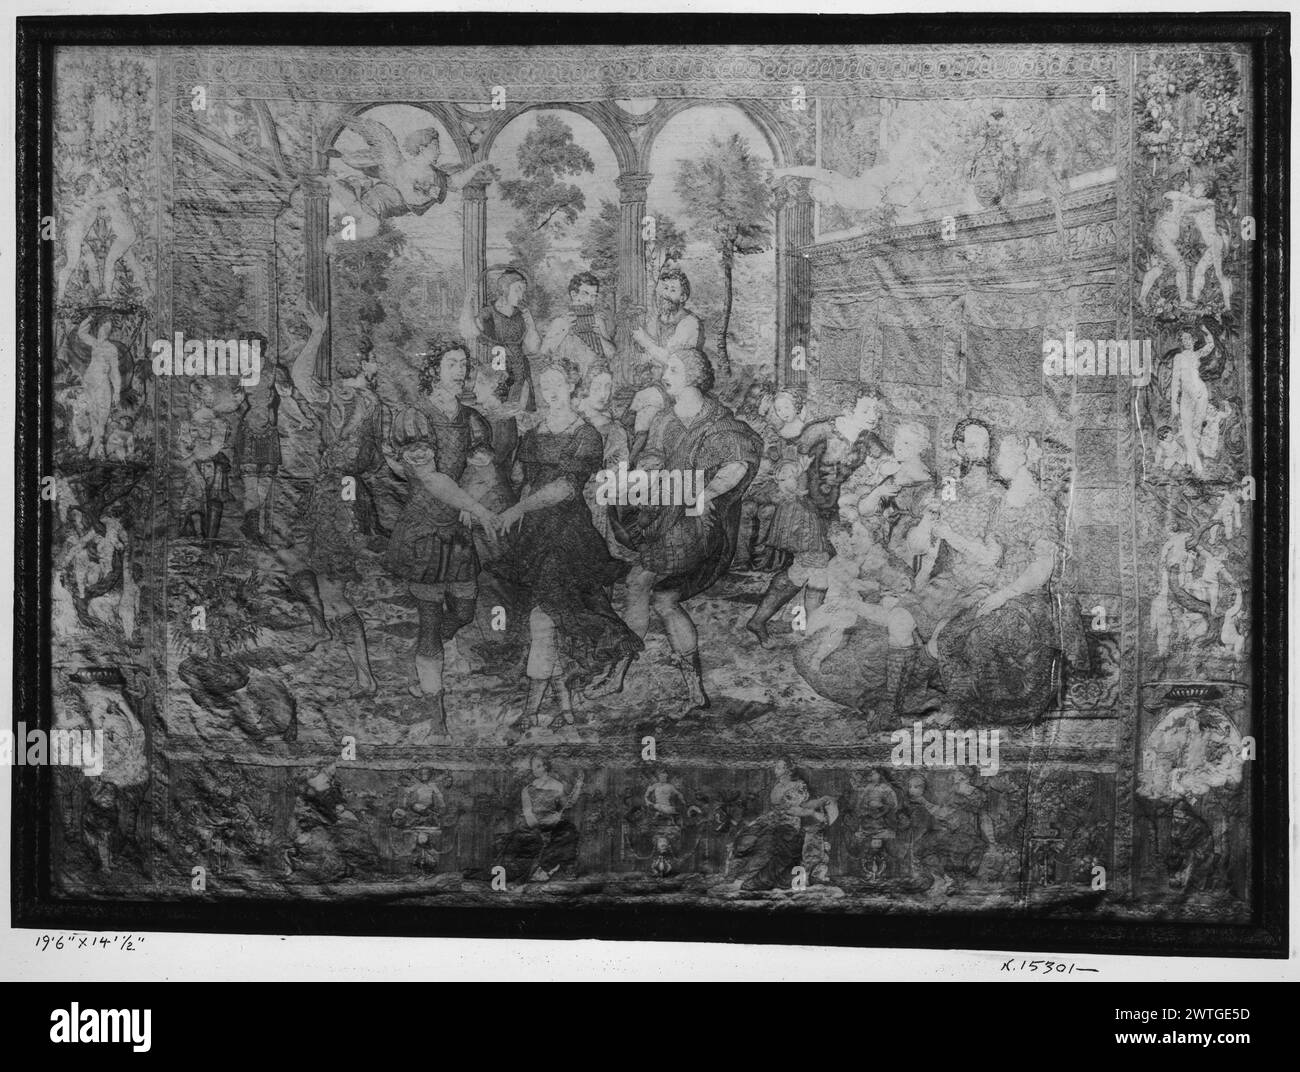 Danse et musique dans le palais de Cecrop. Pannemaker, Wilhelm de (Netherlandish (avant 1600) - Flandre, Act. 1535-1578) (atelier) [tisserand] c. 1550 tapisserie dimensions : H 14'.5' x l 19'6' tapisserie matériaux/techniques : laine et soie ; soie ; fil métallique (argent doré) ; fil métallique (argent doré) culture : Centre de tissage flamand : Bruxelles histoire de propriété : famille la Cerda, ducs de Medinaceli, Espagne (ensemble complet en leur possession, peut-être depuis le XVIe siècle). Duchesse de Denia, veuve du duc (en sa possession jusqu'à sa mort en 1903, date à laquelle la tapisserie passa aux héritiers du duc Banque D'Images